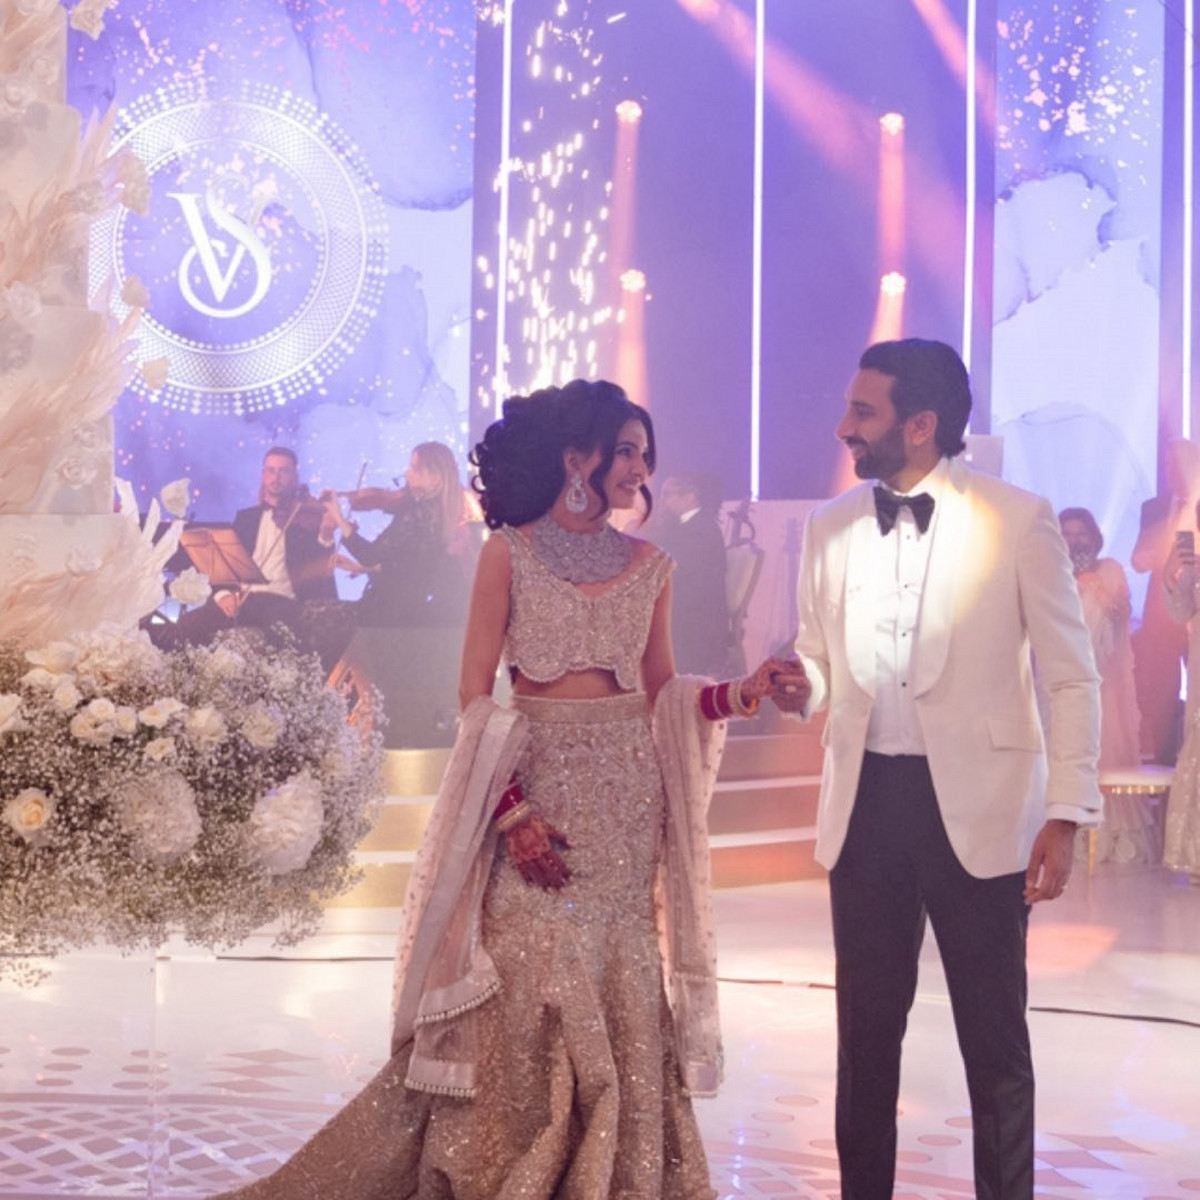 Đám cưới như mơ của triệu phú trẻ tuổi Vivek Chadha với cô vợ người mẫu trước khi đột tử (ảnh: Daily Mail)